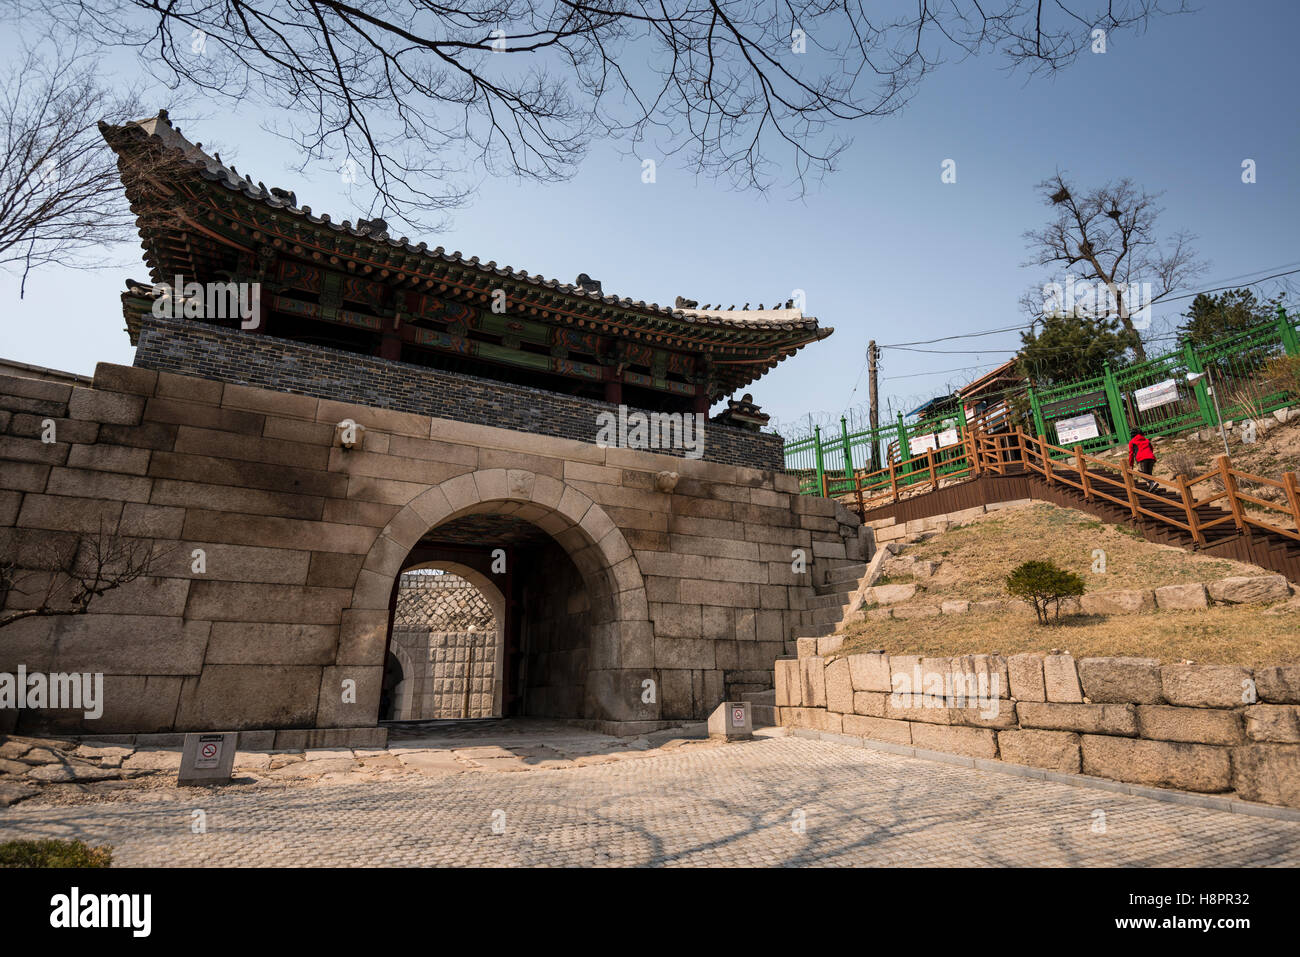 Changui Changuimun (ou porte), l'un des principaux points d'entrée de la ville de Séoul (mur) Hanyangdoseong Buamdong, sentier, Séoul, Corée Banque D'Images